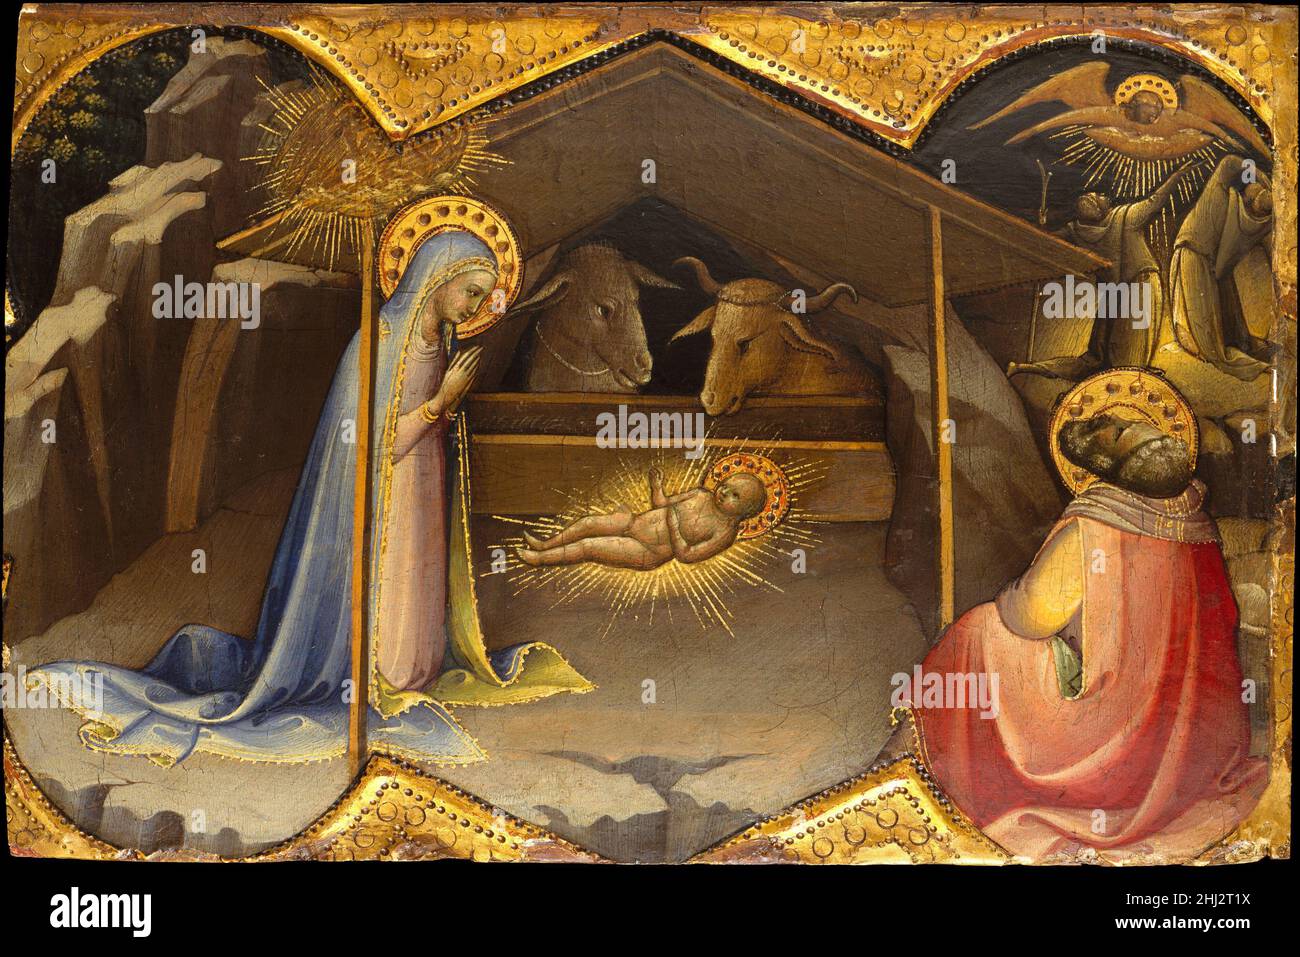 La Nativité ca.1406–10 Lorenzo Monaco (Piero di Giovanni) Italien Lorenzo Monaco, le principal peintre de Florence au début du XVe siècle, est un peintre de manuscrits illuminés, de fresques et de tableaux.Promoteur majeur du style gothique international, son style se caractérise par une couleur lumineuse et des lignes fluides, rythmiques et gracieuses.Dans cette exquise représentation de la Nativité, les éléments de composition sont brillamment adaptés au champ de la quatrefroil, et les harmonies de couleur riches et subtiles reflètent la compétence de l'artiste en tant que peintre manuscrit.Particulièrement le strikin Banque D'Images